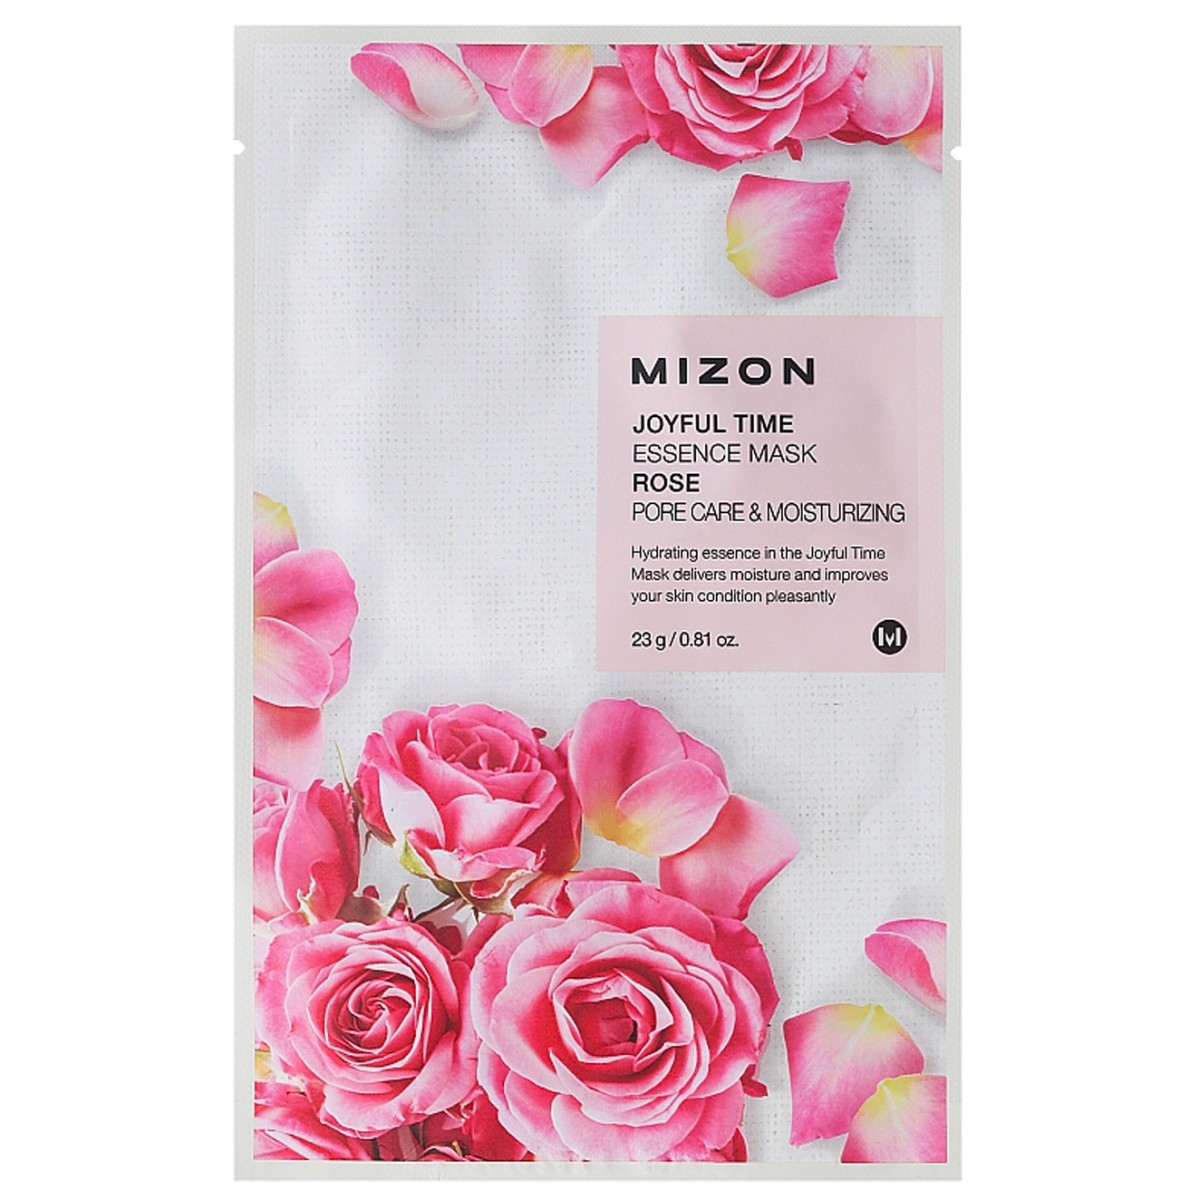 Mascarillas Coreanas de Hoja al mejor precio: Joyful Time Essence Mask Rose - Hidratación y poros dilatados de Mizon en Skin Thinks - Piel Seca